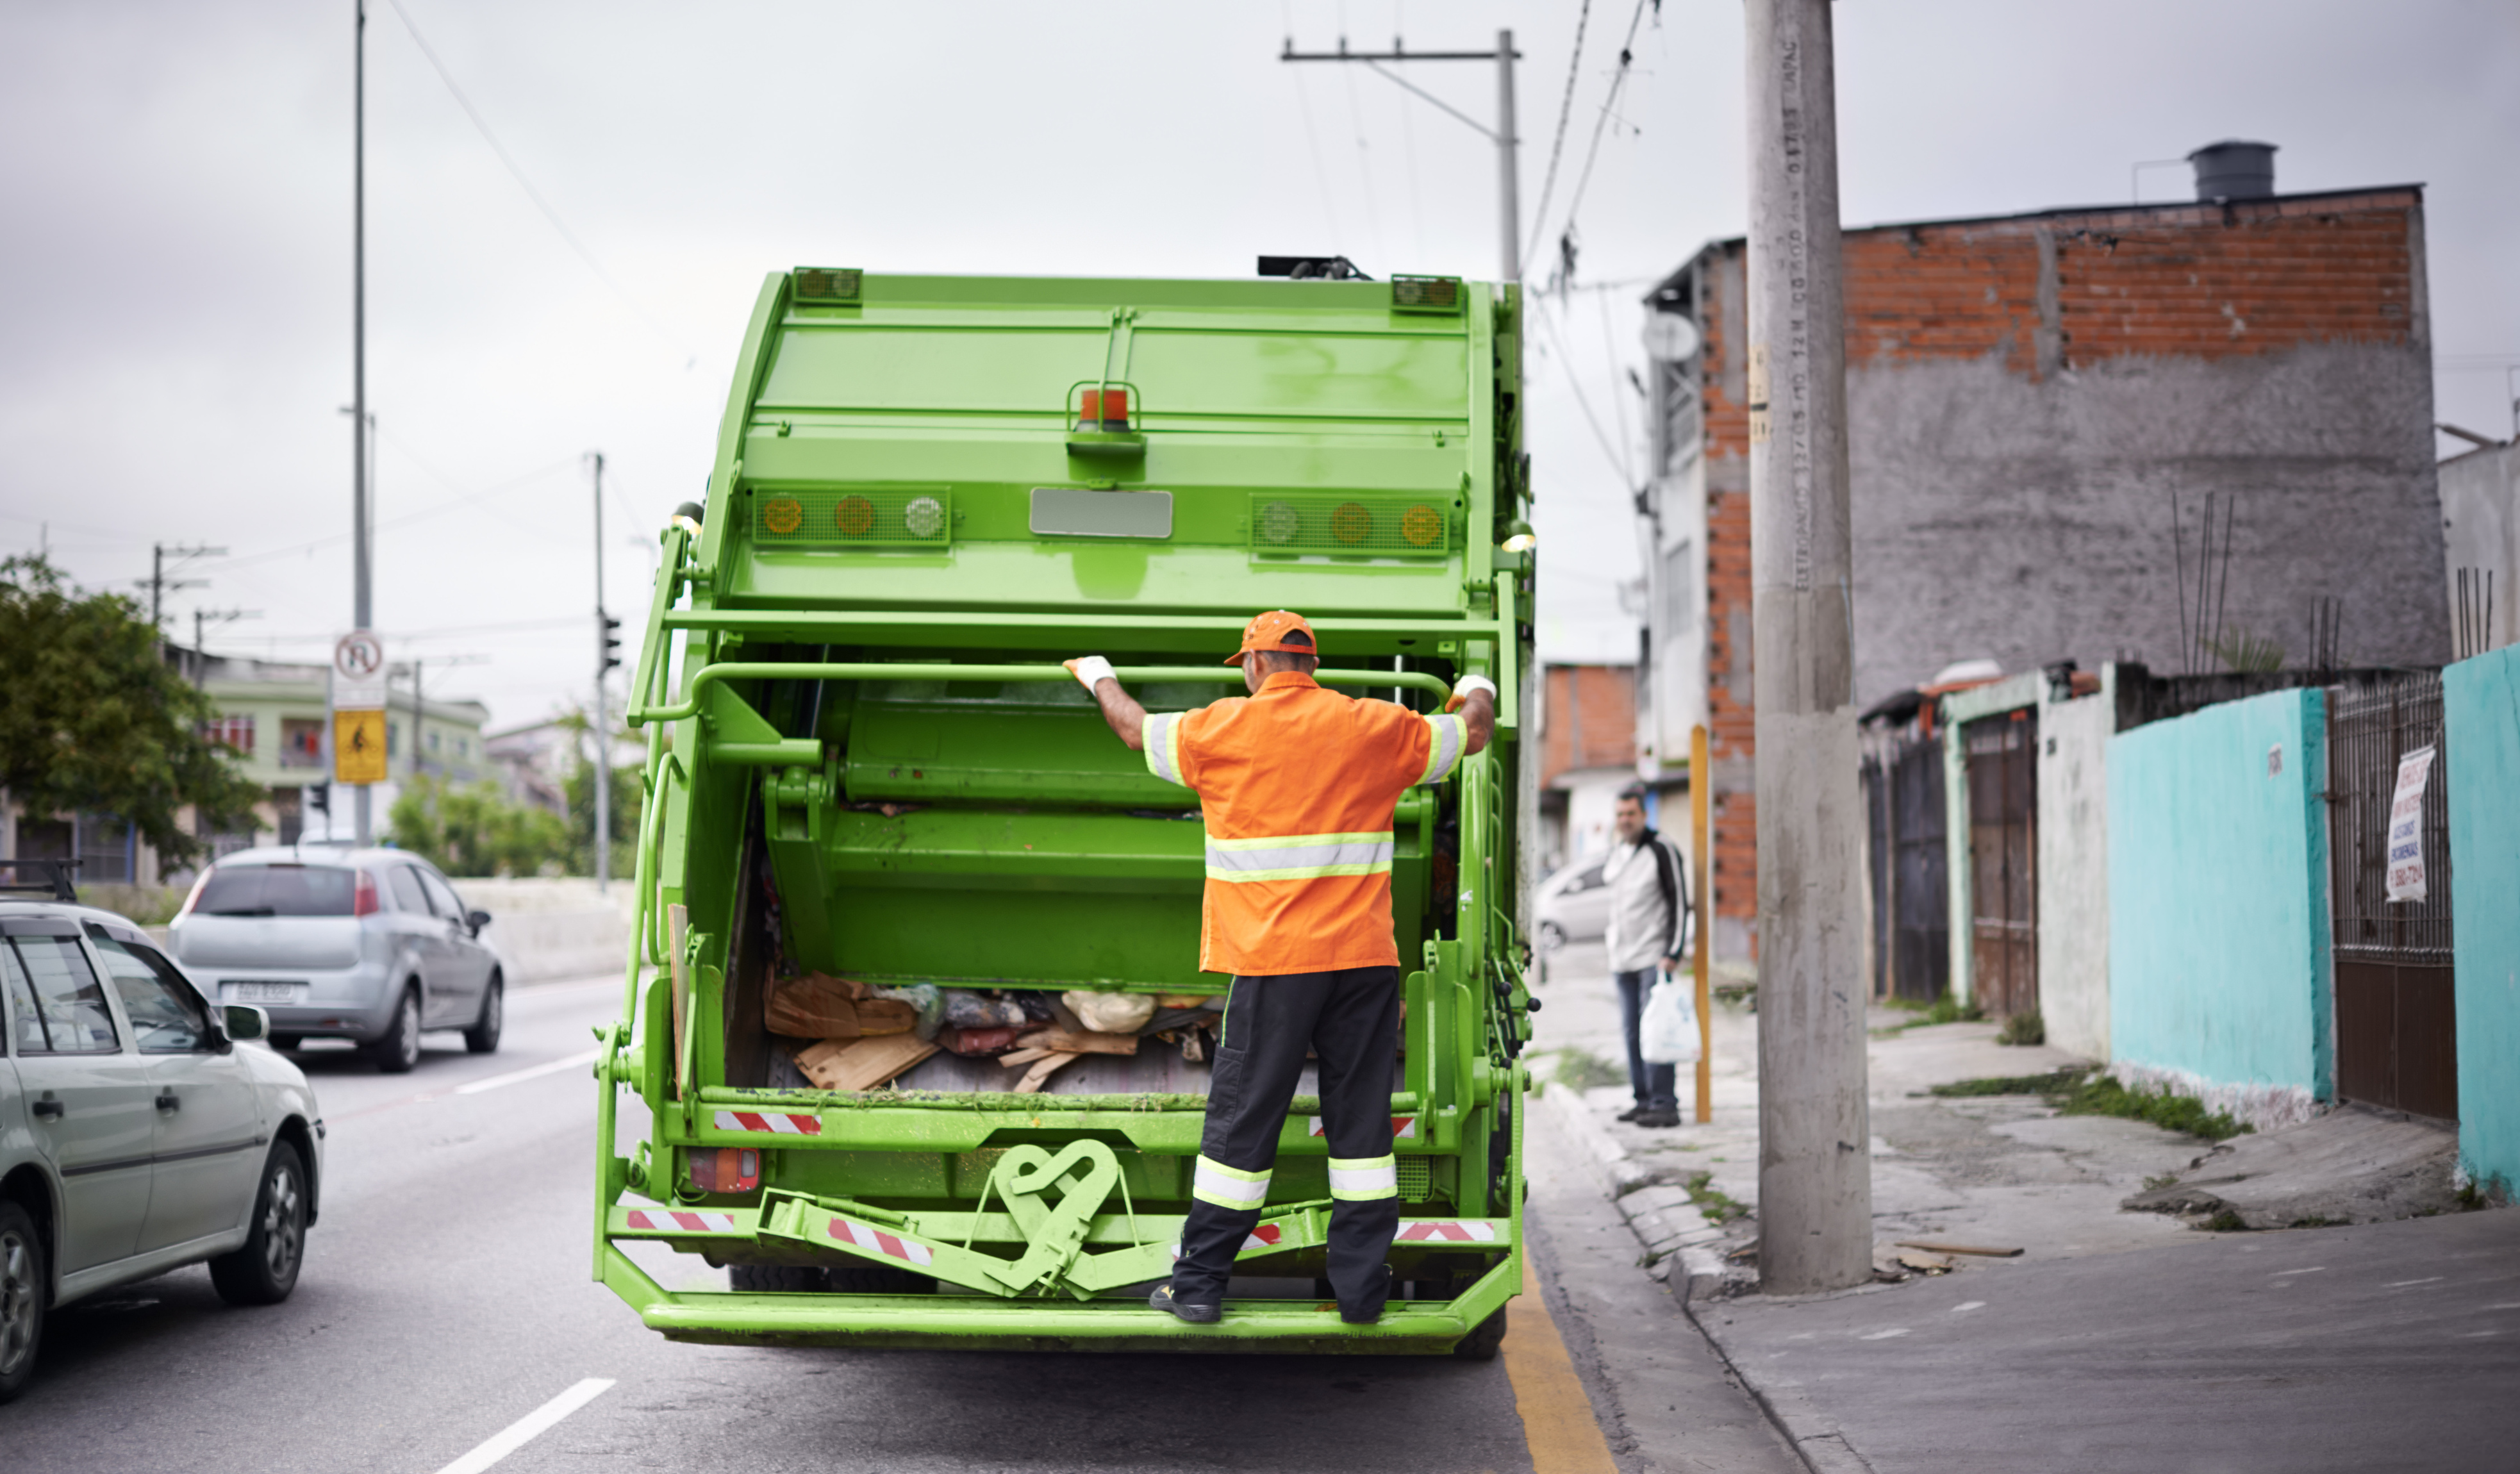 Caminhões de lixo que oferecem riscos não podem circular em SJC, decide des. Giordani